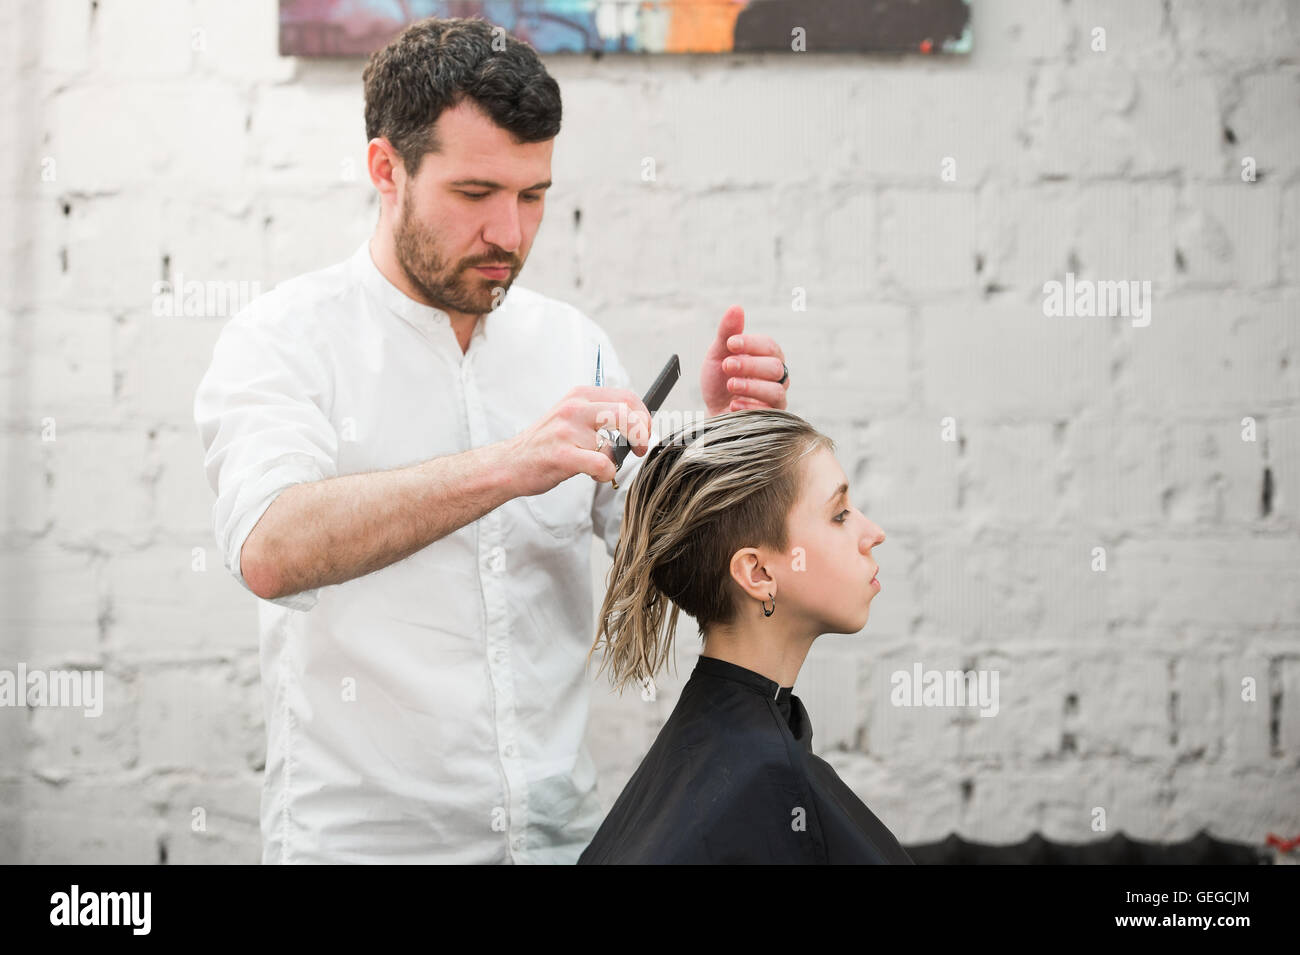 Friseur schneidet Haare mit einer Schere auf Krone schöner zufriedener Kunde in professionellen Coiffeur-salon Stockfoto